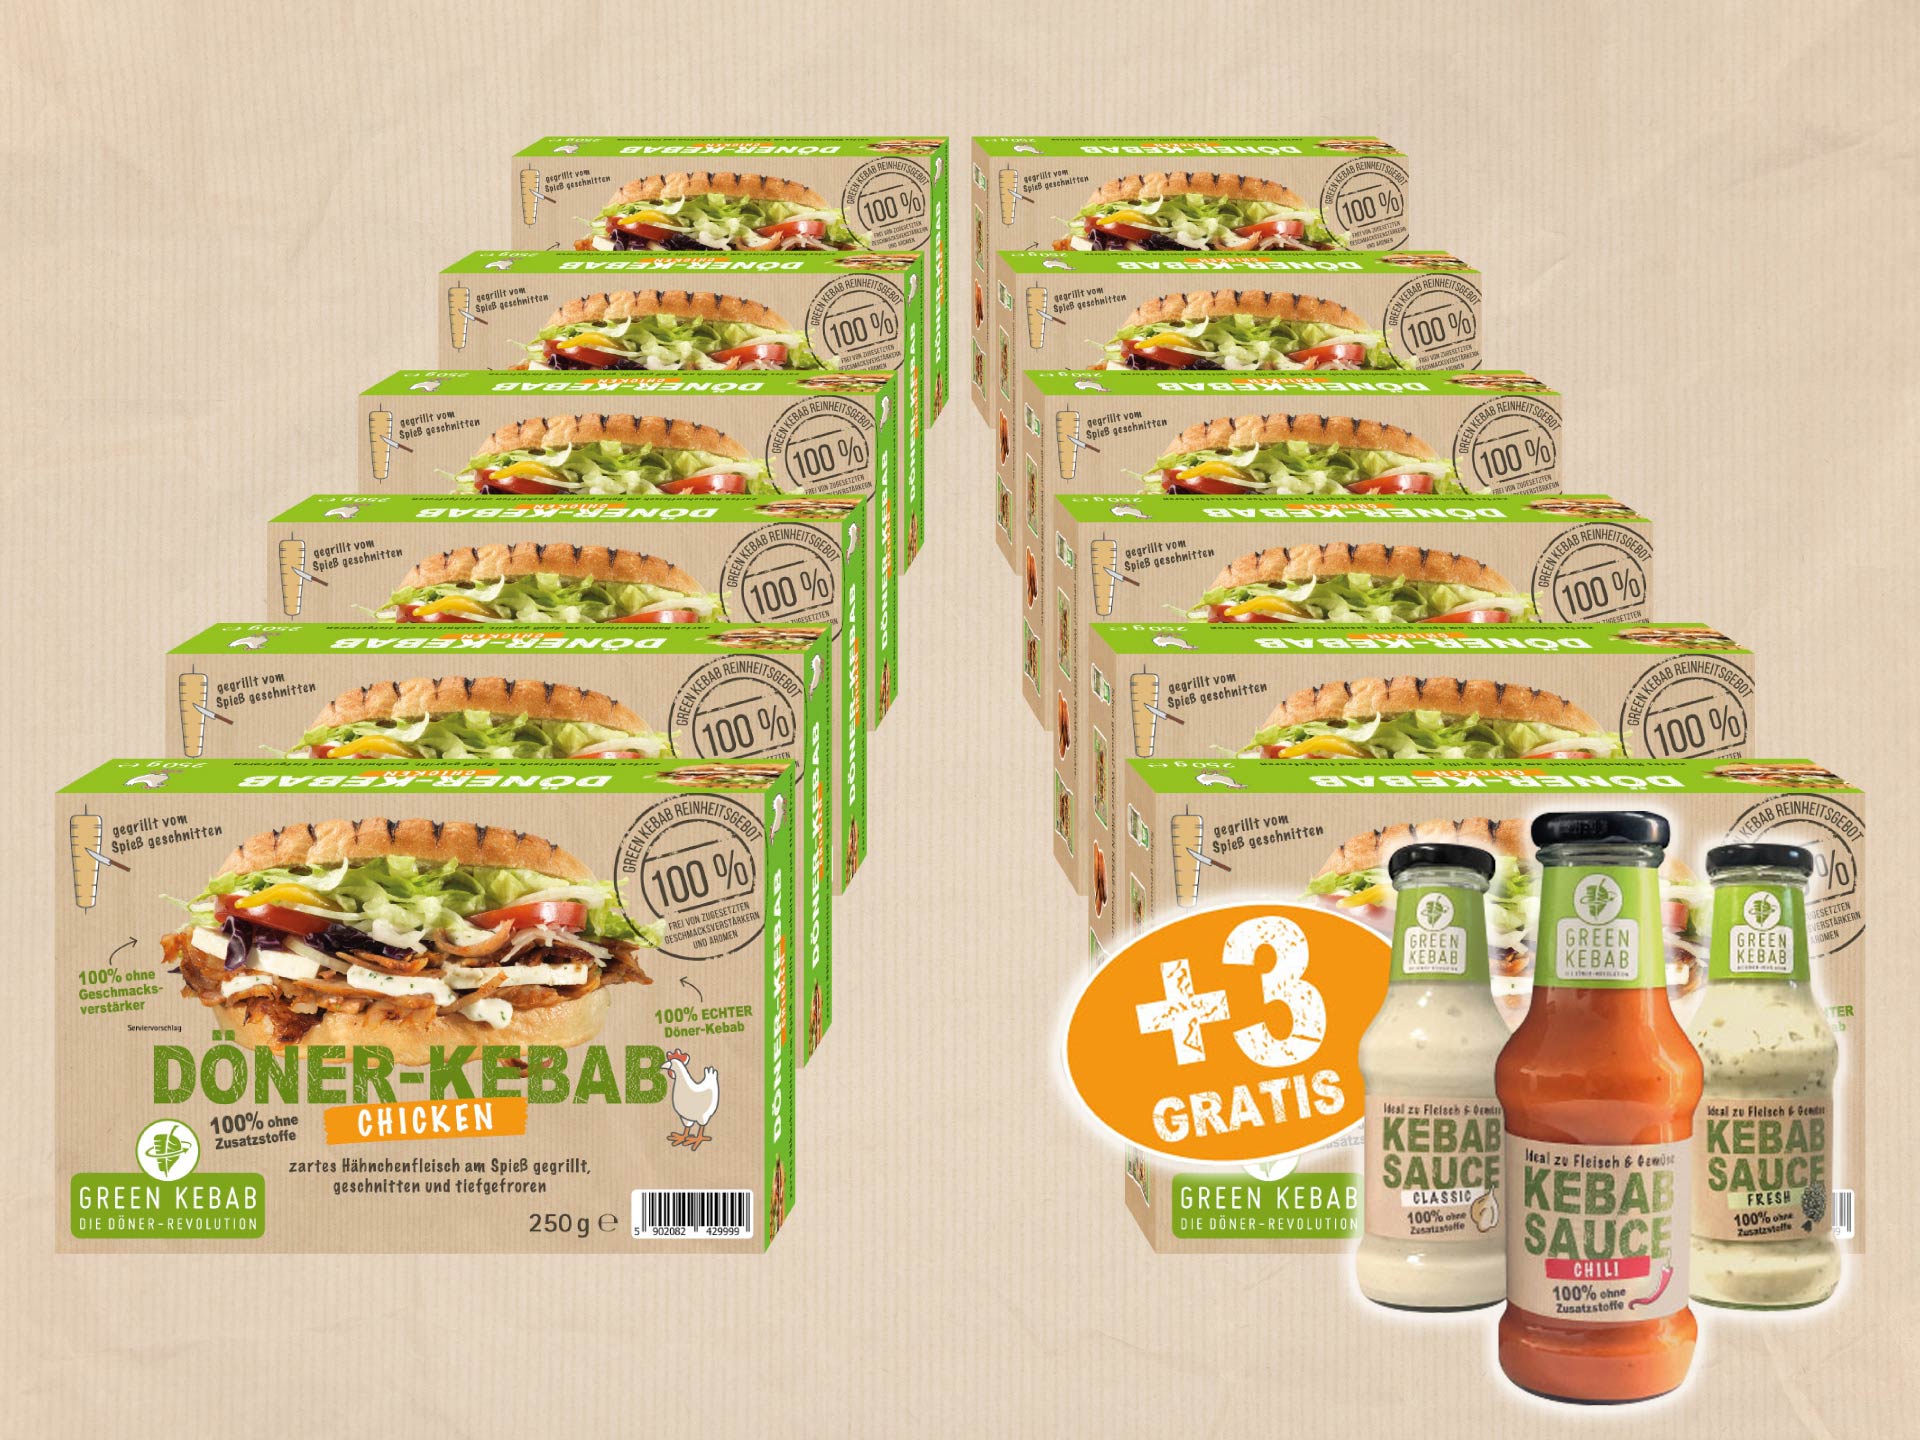 Döner Kebab "Grilled CHICKEN" (12 x 250g Schachteln)